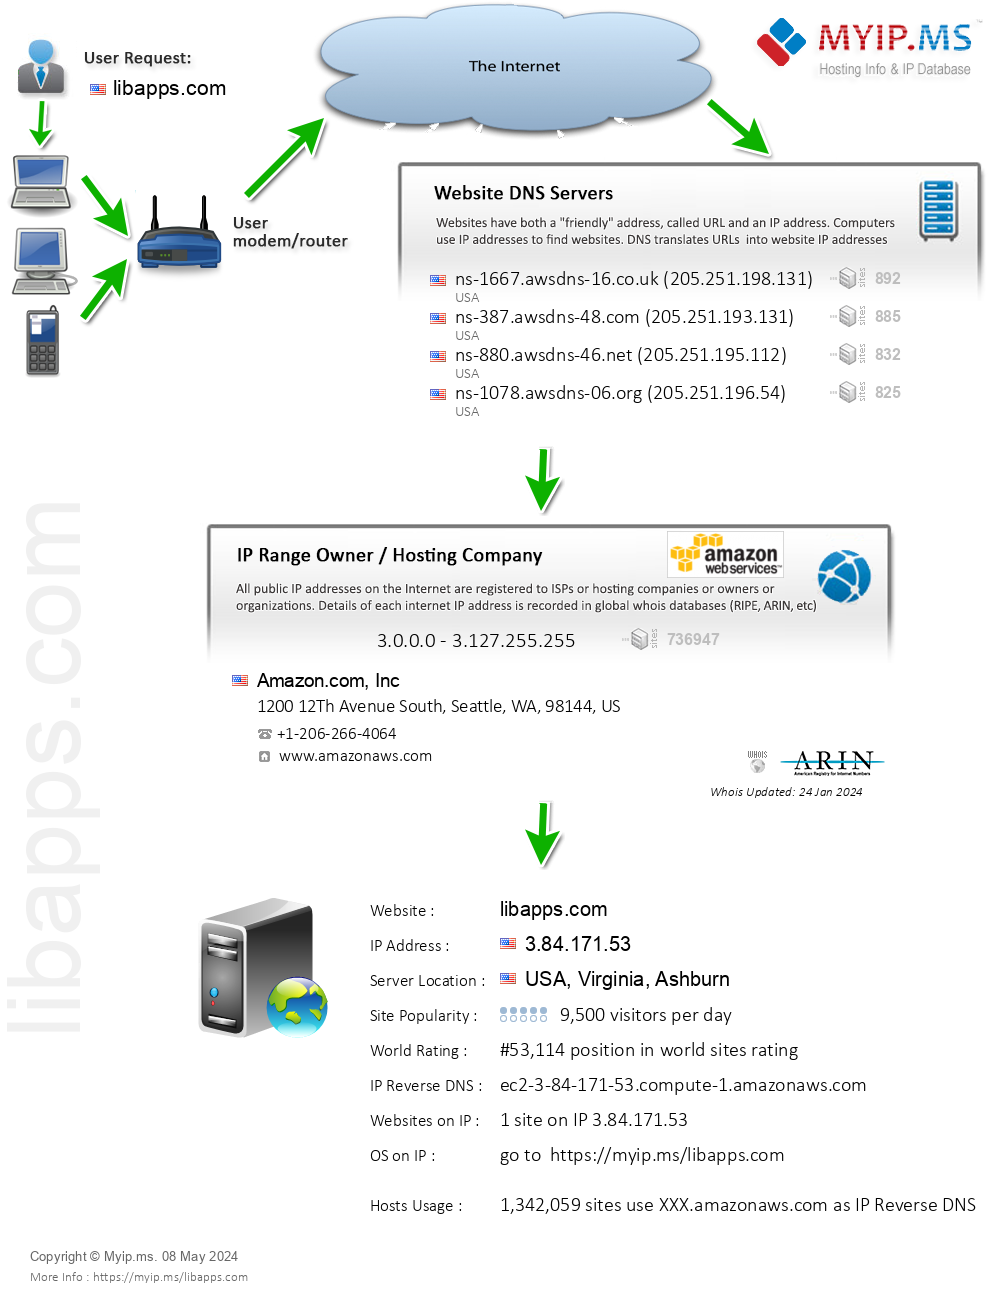 Libapps.com - Website Hosting Visual IP Diagram